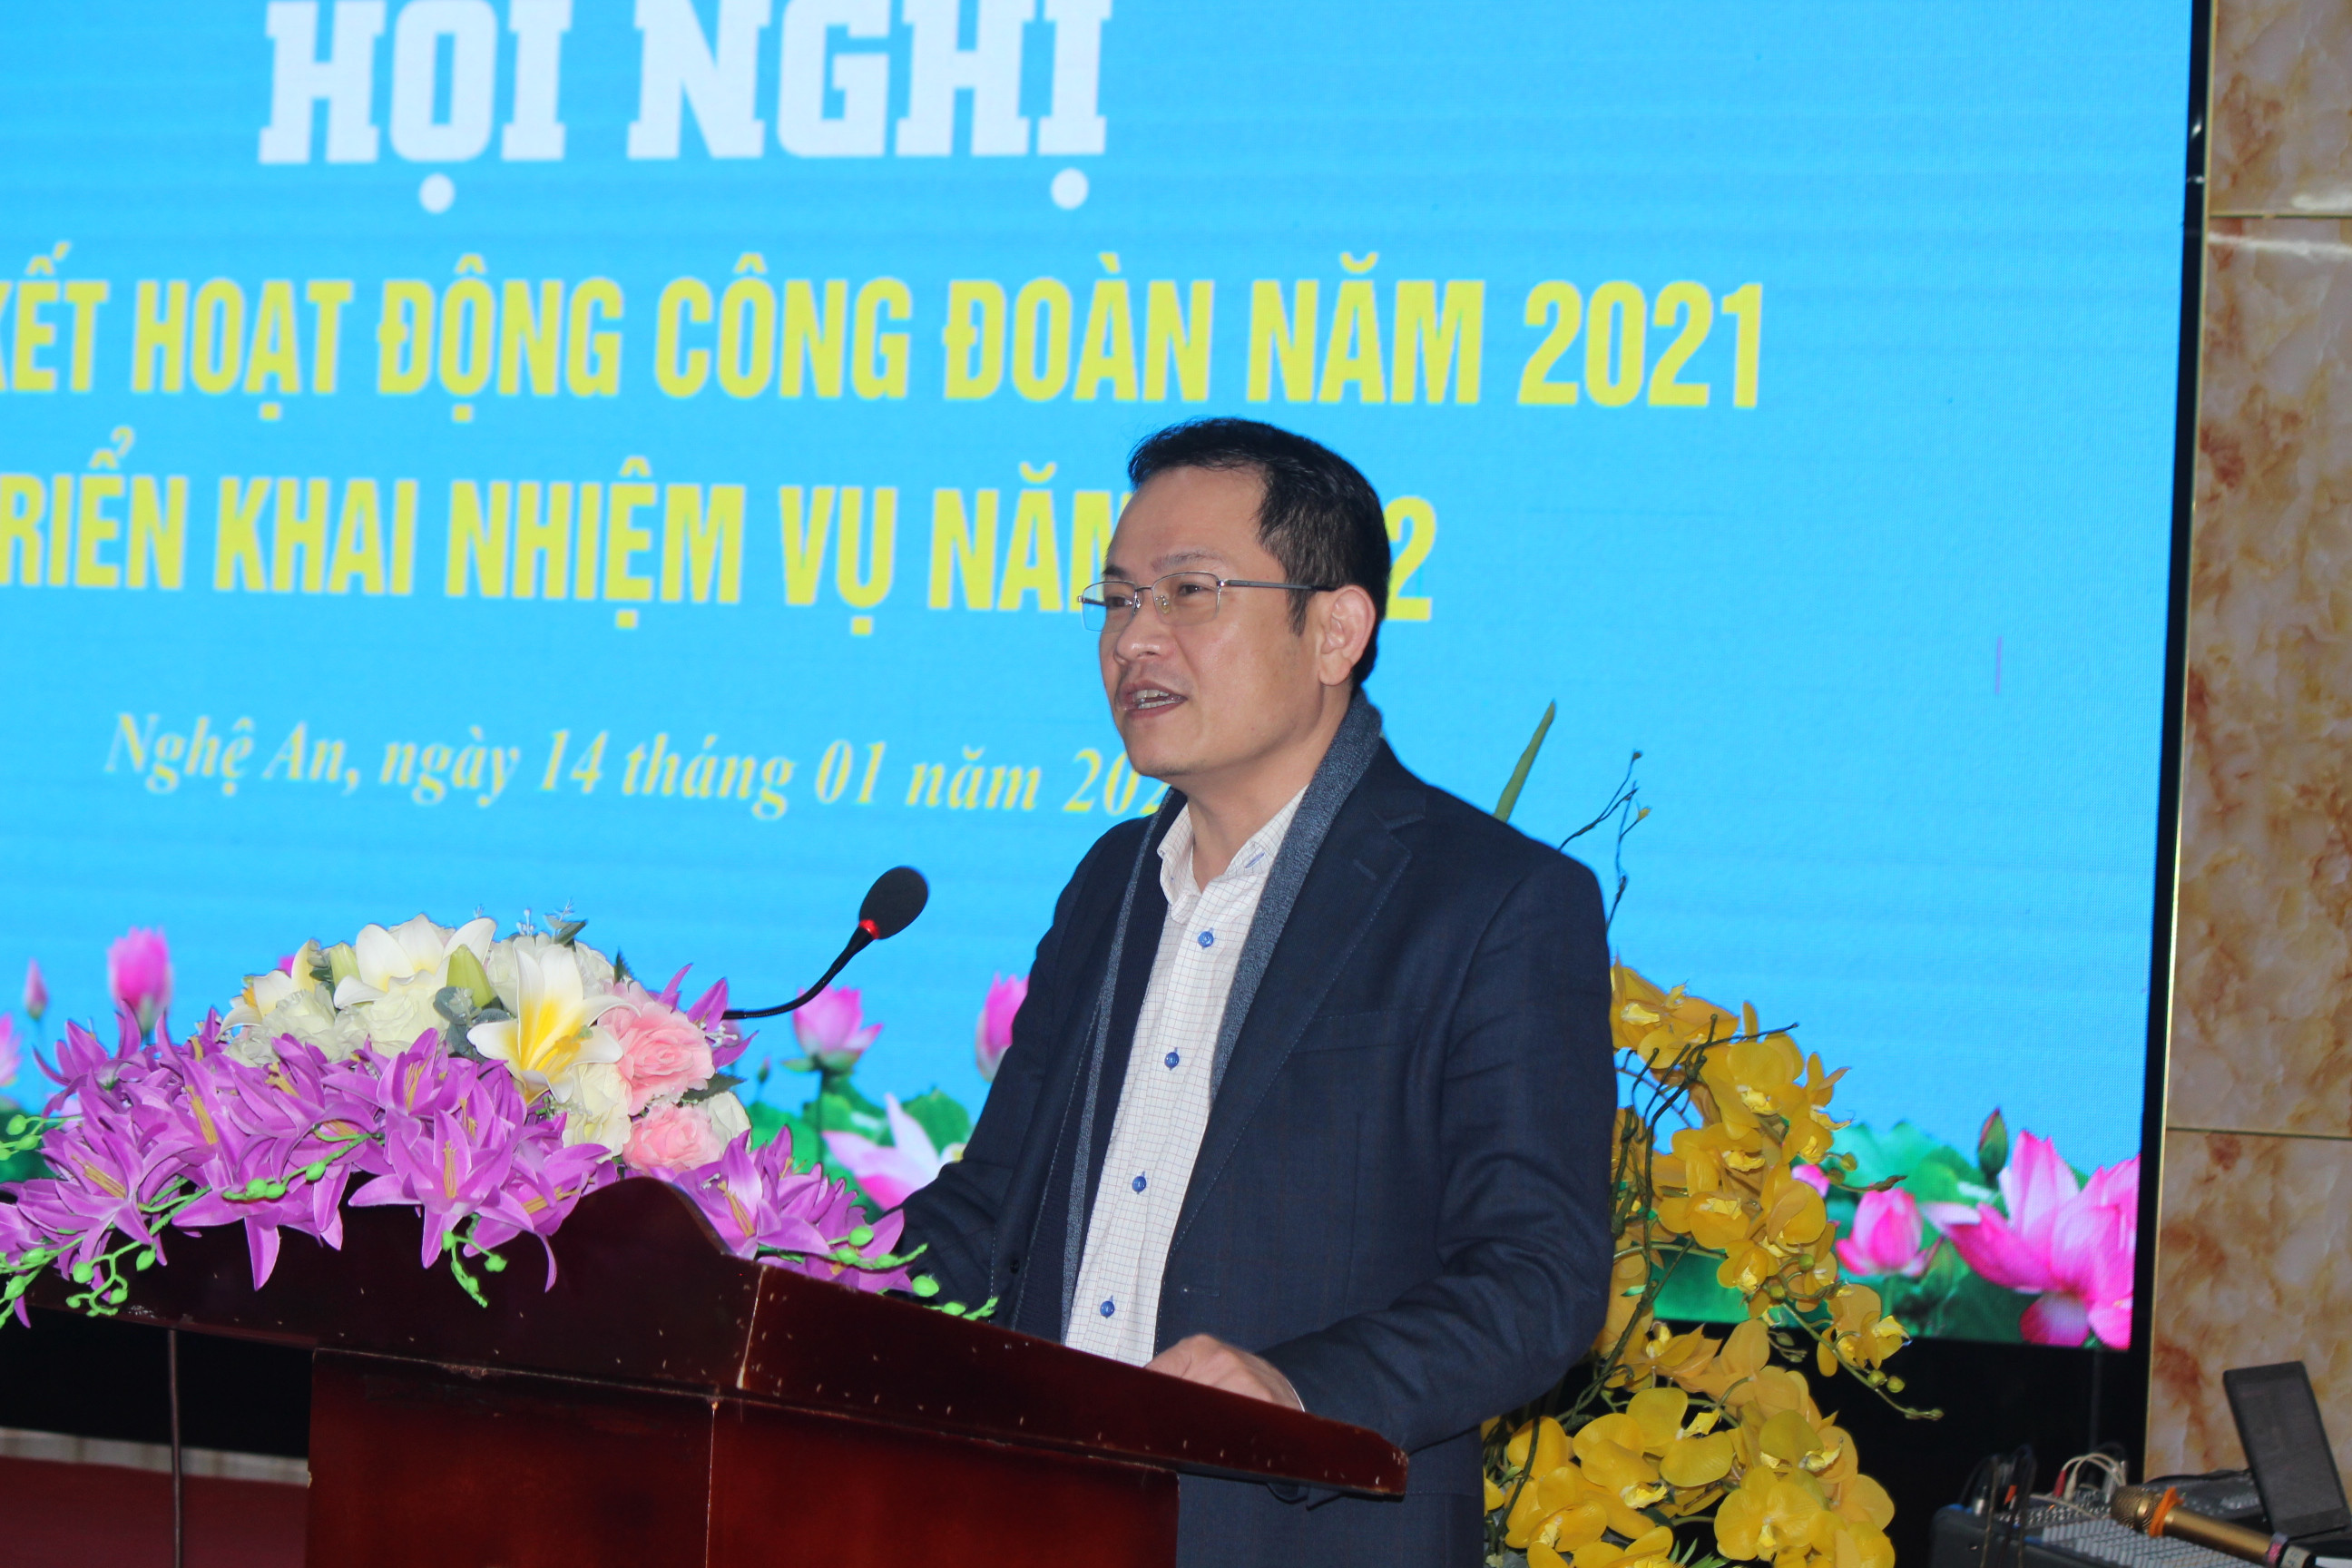 Ông Nguyễn Hữu Lê – Phó Giám đốc Sở Y tế Nghệ An ghi nhận những nỗ lực của công đoàn ngành trong công tác phòng, chống dịch Covid-19. Ảnh: D.T